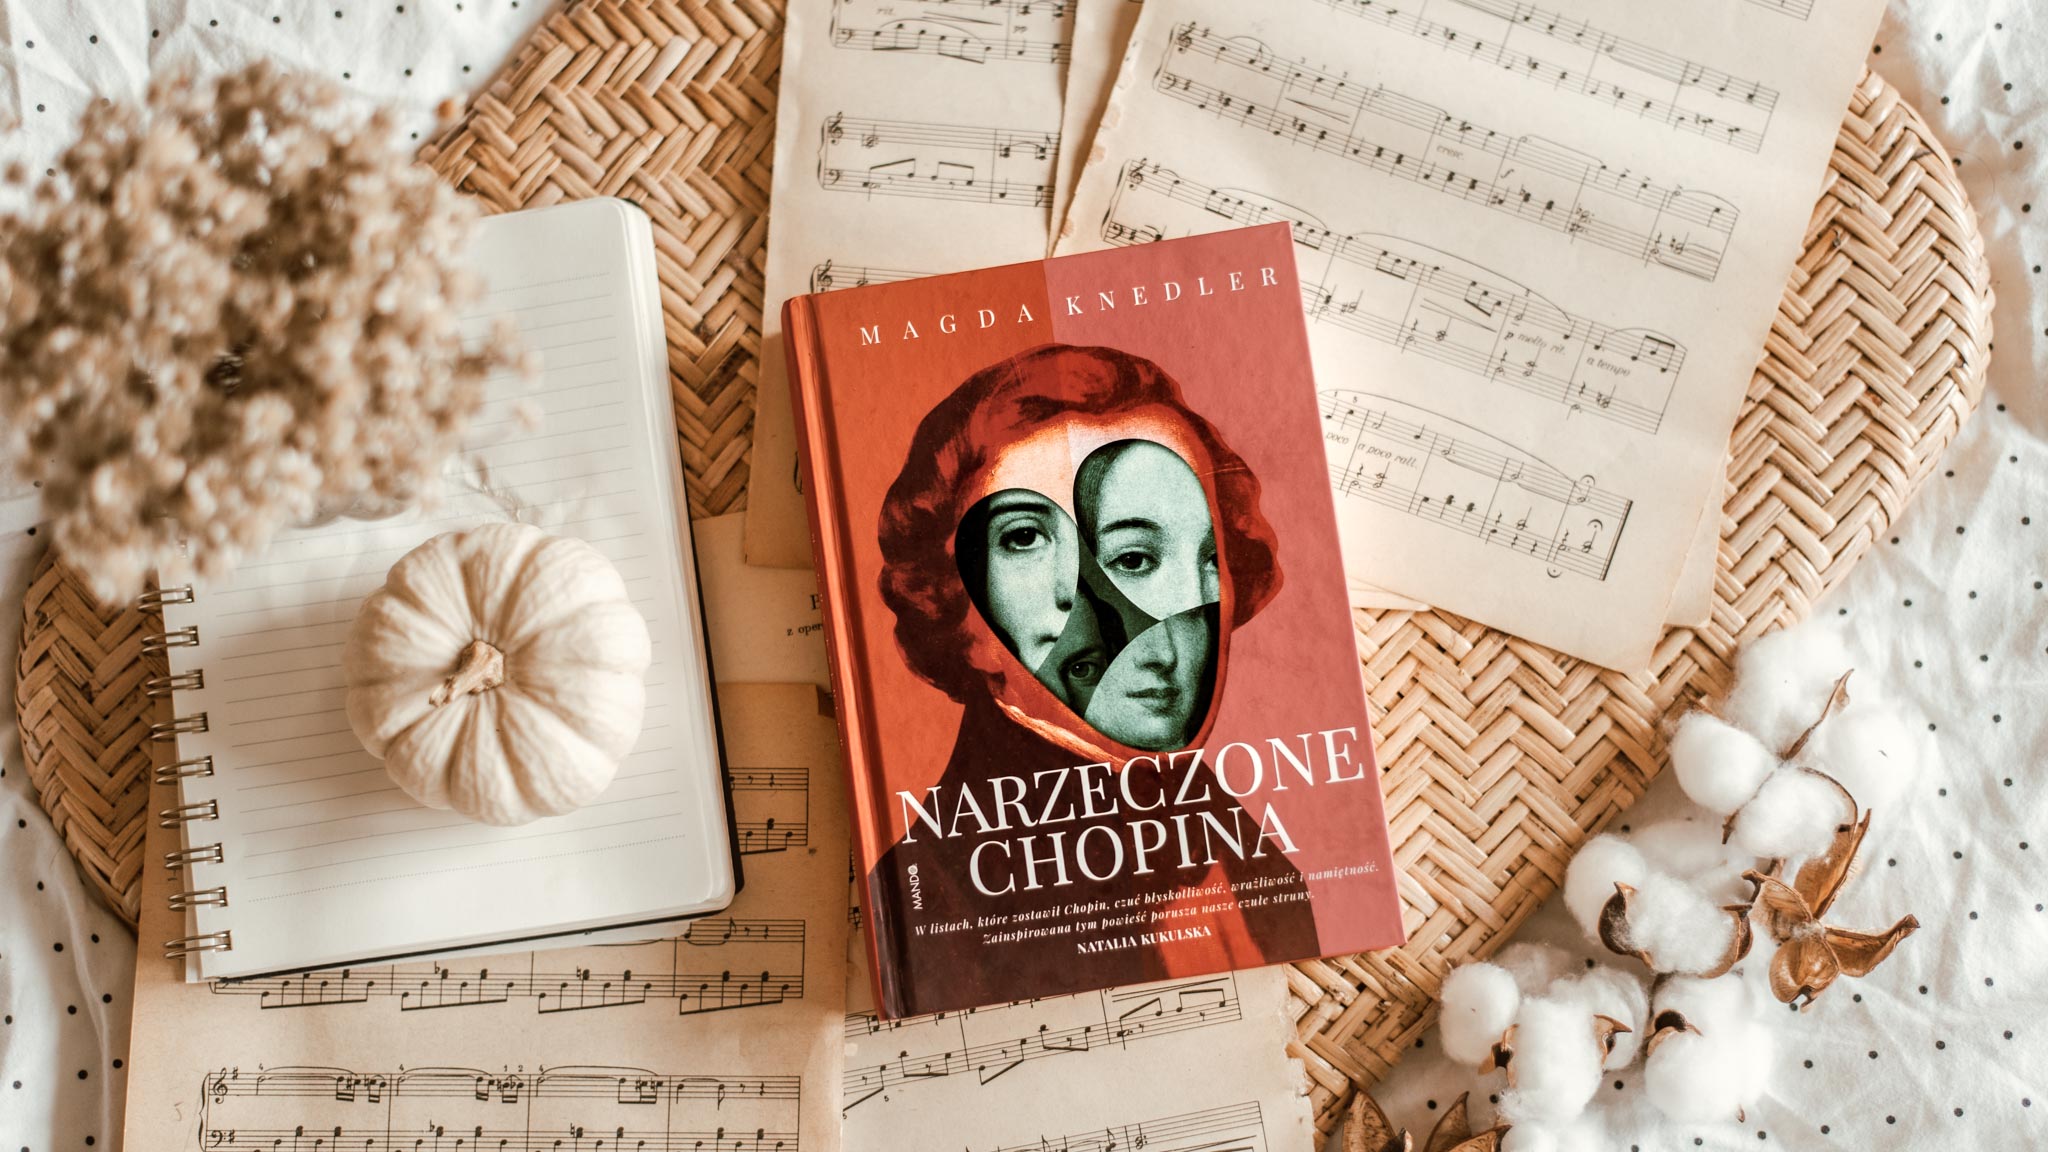 Narzeczone Chopina – Magda Knedler